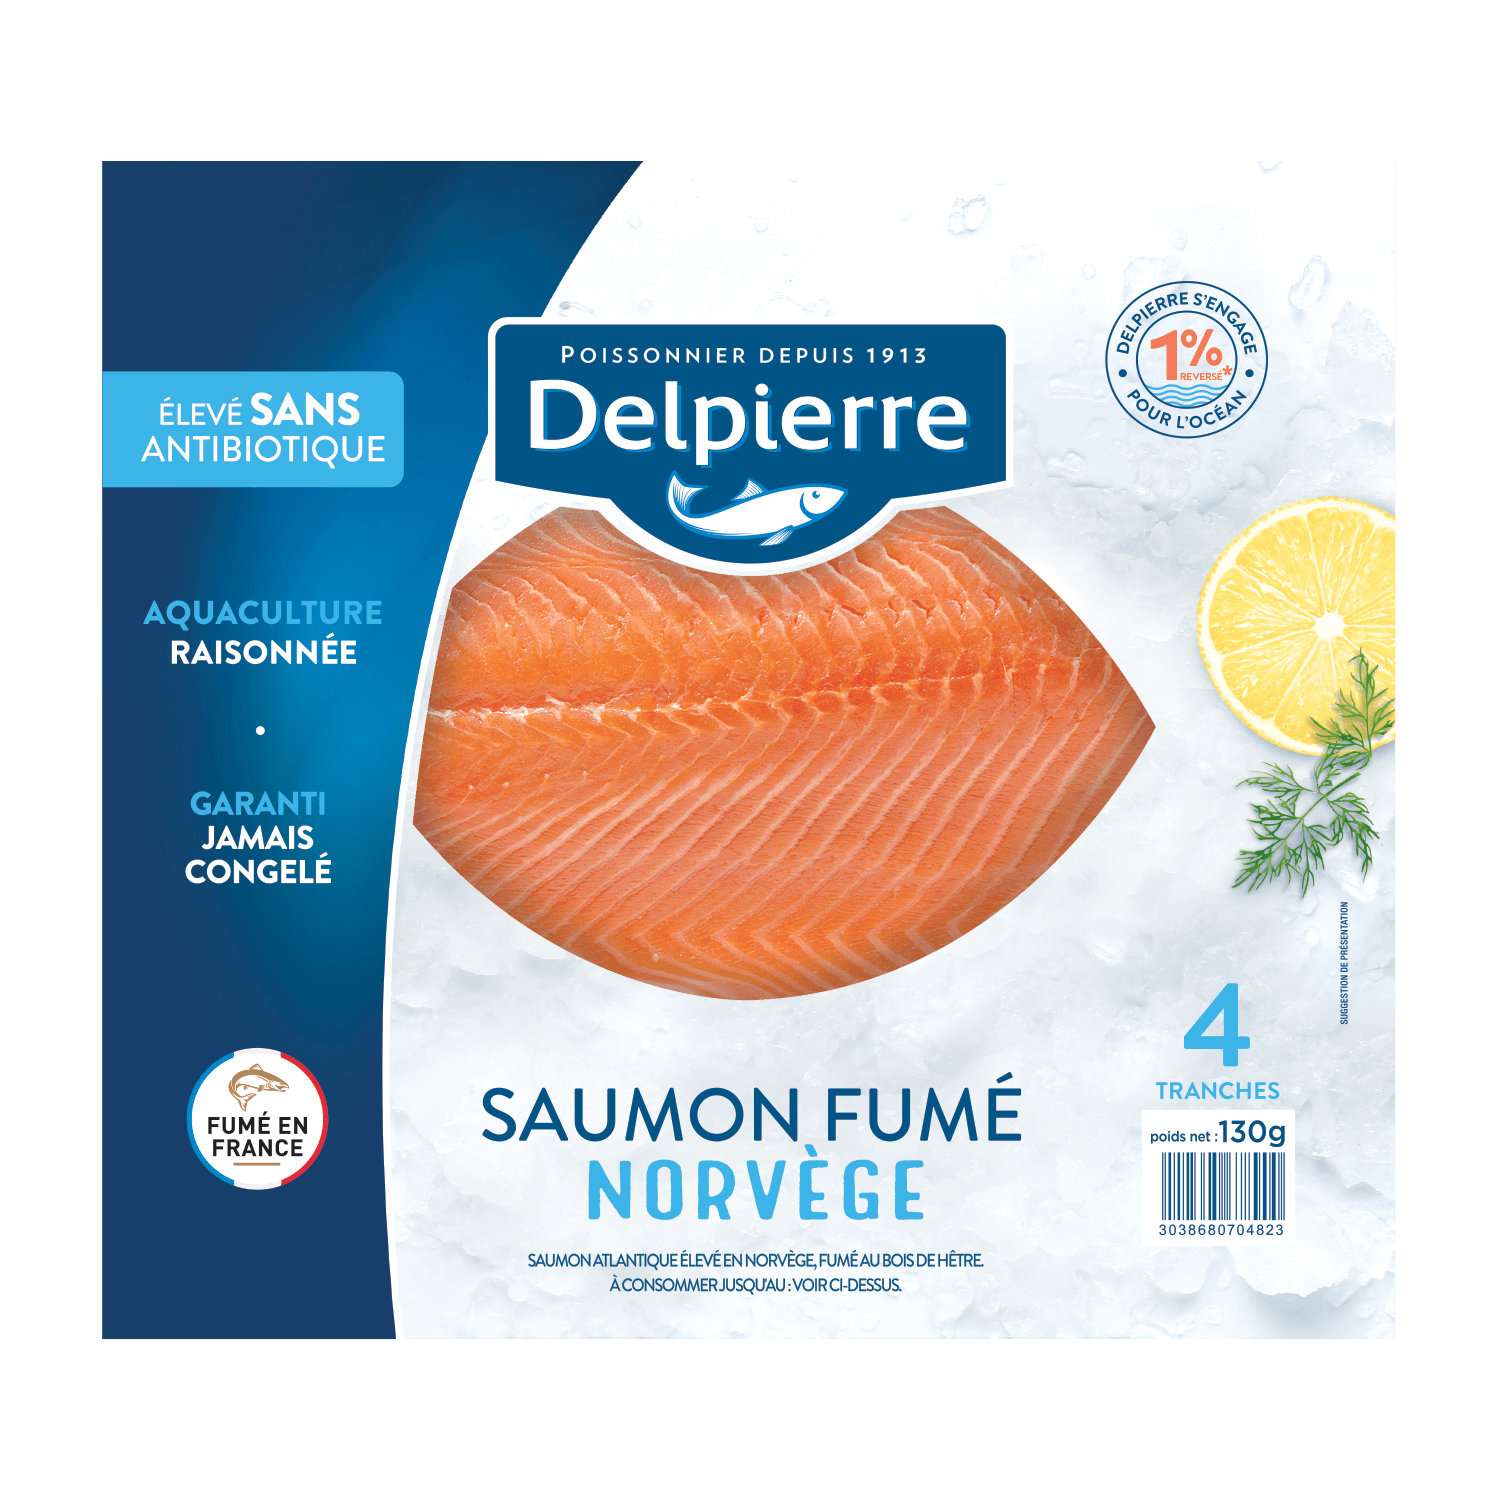 SAUMON FUMÉ DE NORVÈGE - Delpierre